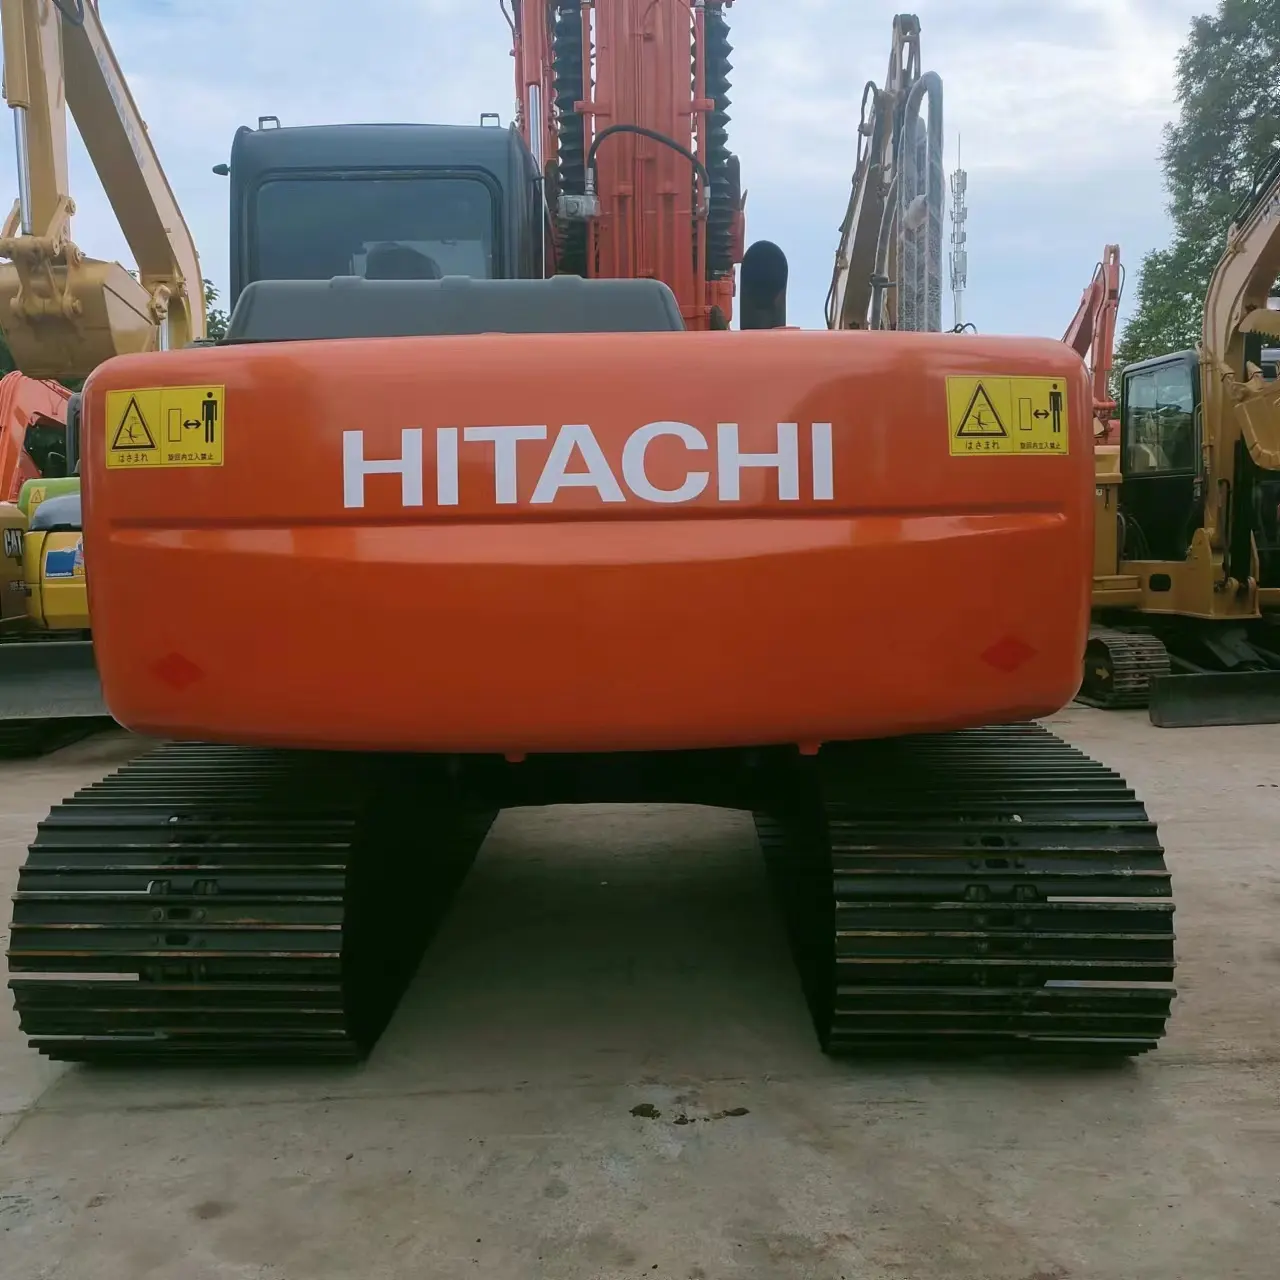 Segunda mão original Hitachi ZAXIS120 segunda mão escavadeira qualidade venda quente fábrica de vendas diretas